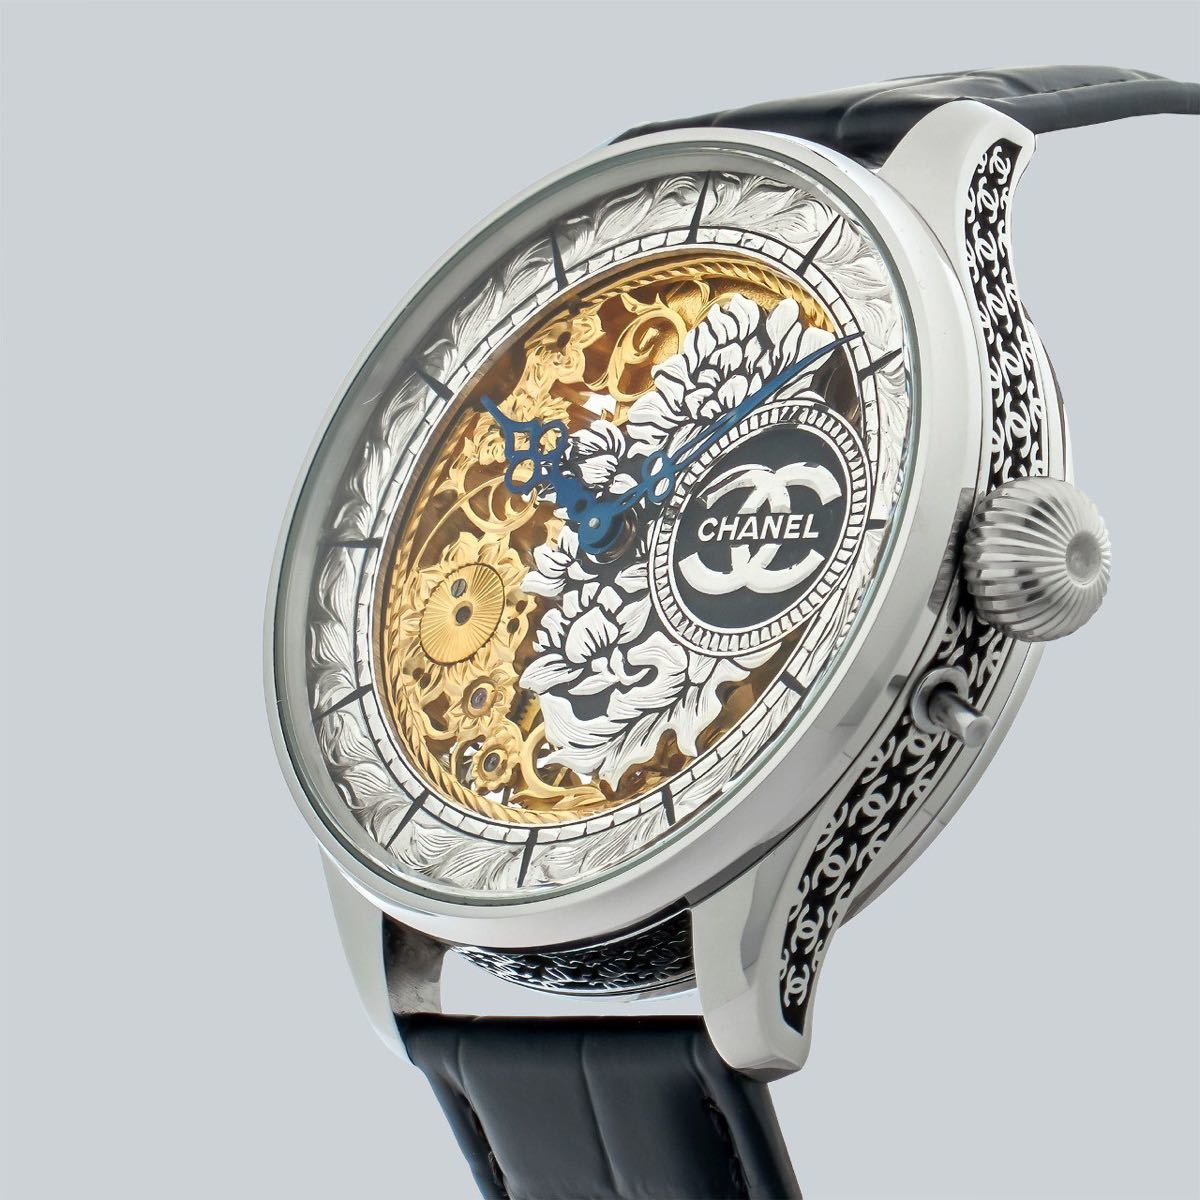 アンティーク Marriage watch CHANEL 懐中時計をアレンジした48mmのメンズ腕時計 半年保証 手巻き スケルトンの画像5